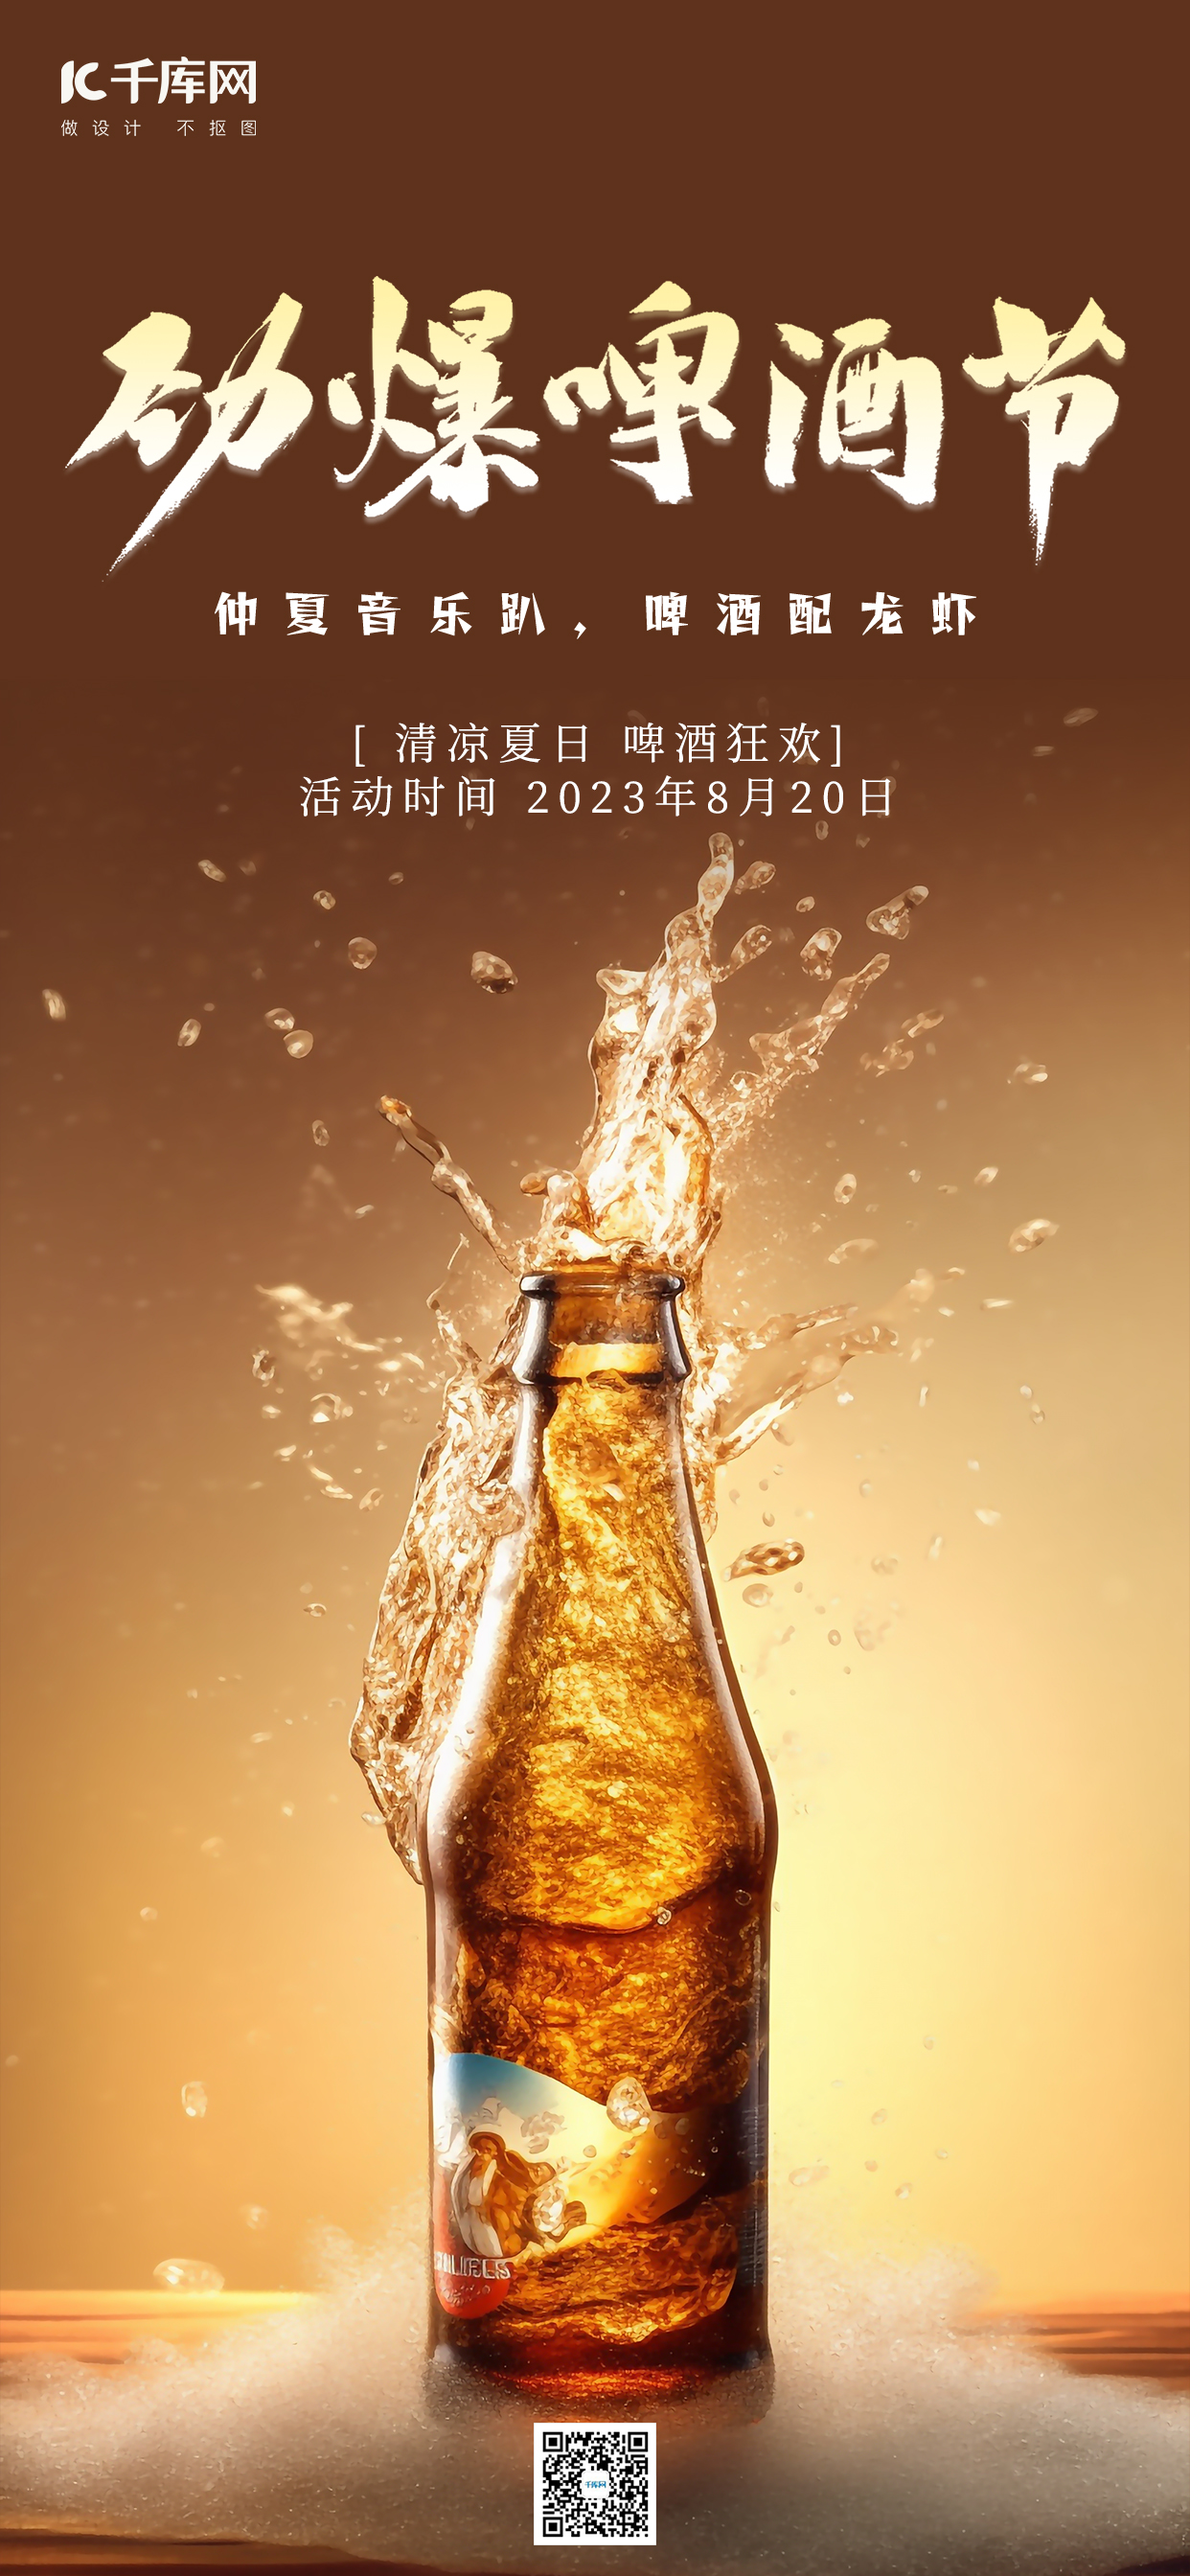 啤酒节劲爆啤酒节黄色手绘广告宣传AIGC海报图片